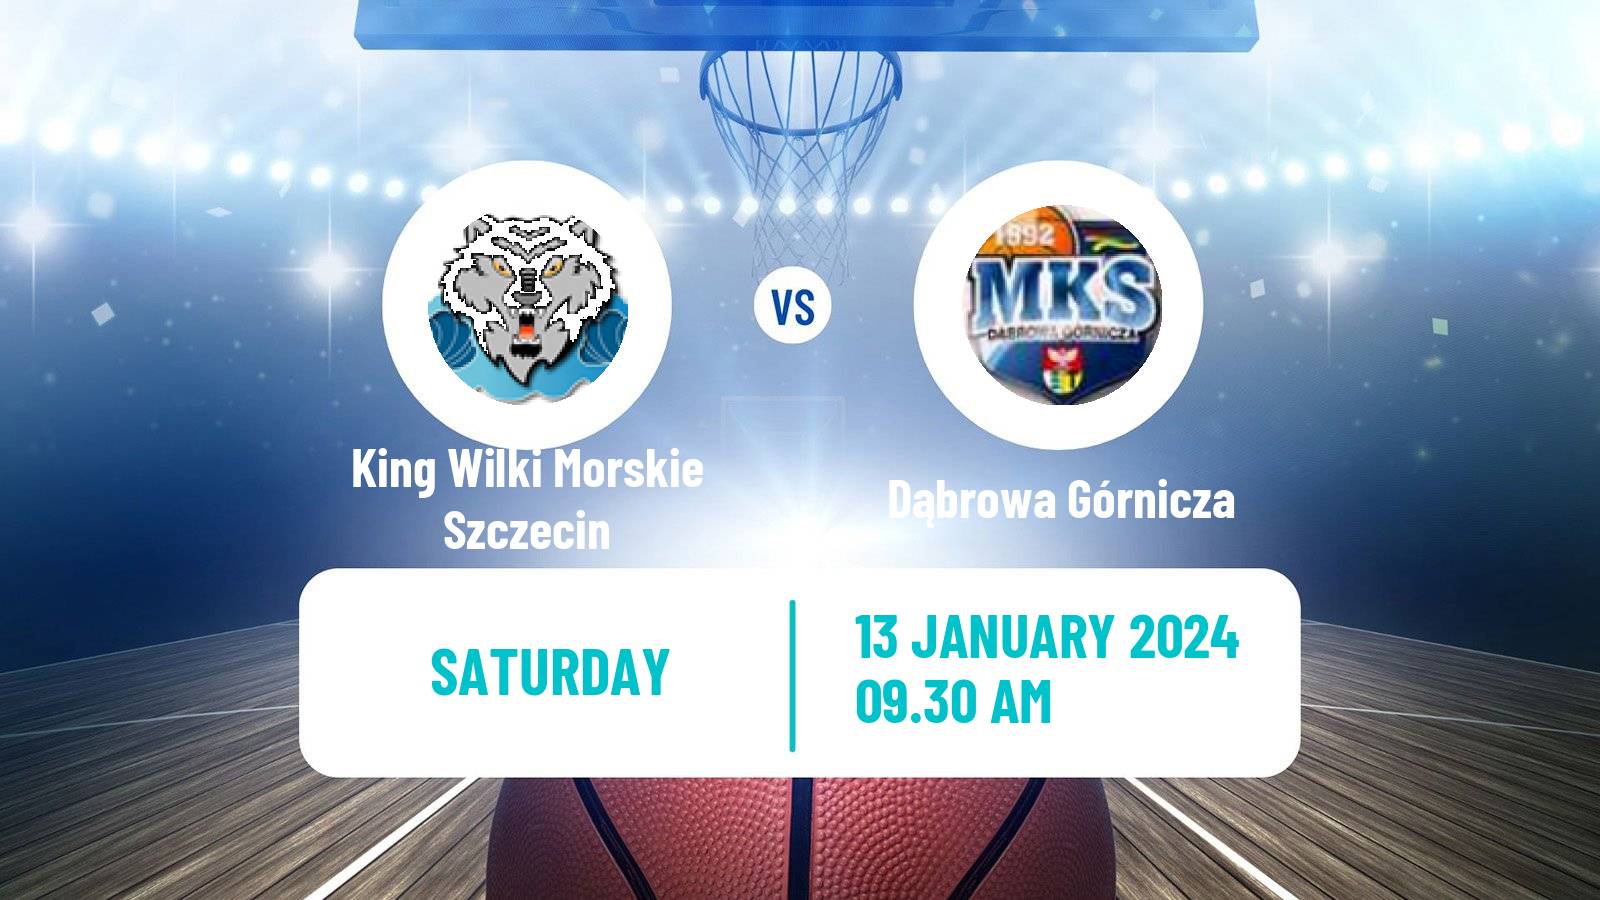 Basketball Polish Basket Liga King Wilki Morskie Szczecin - Dąbrowa Górnicza